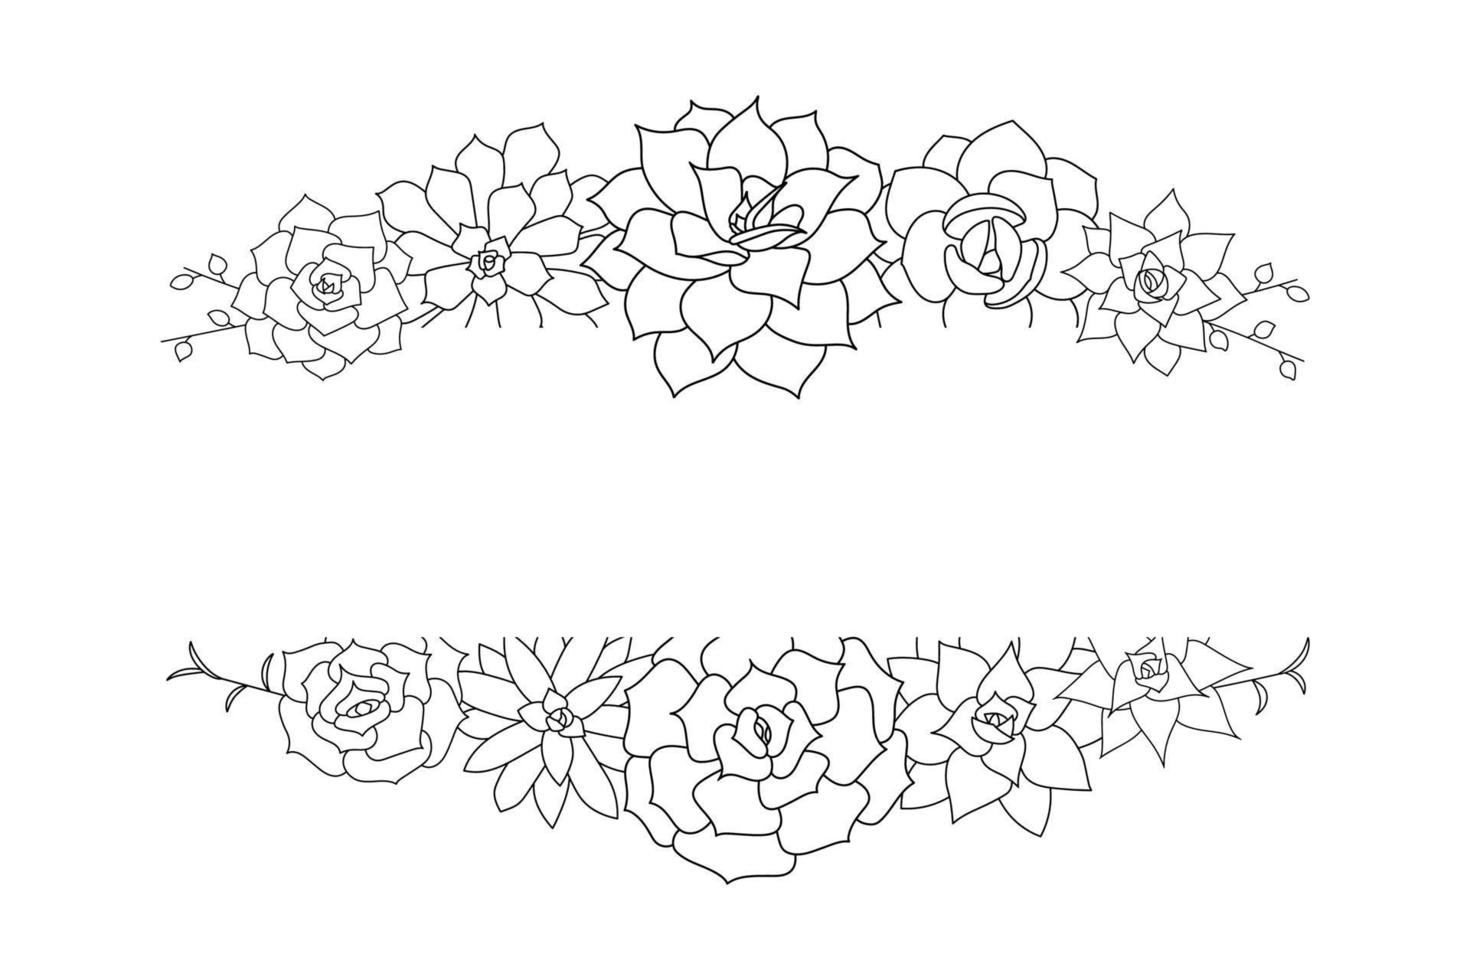 quadro de vetor echeveria suculento. ilustração de flor do deserto desenhada à mão em estilo doodle. definir plantas com contorno preto.